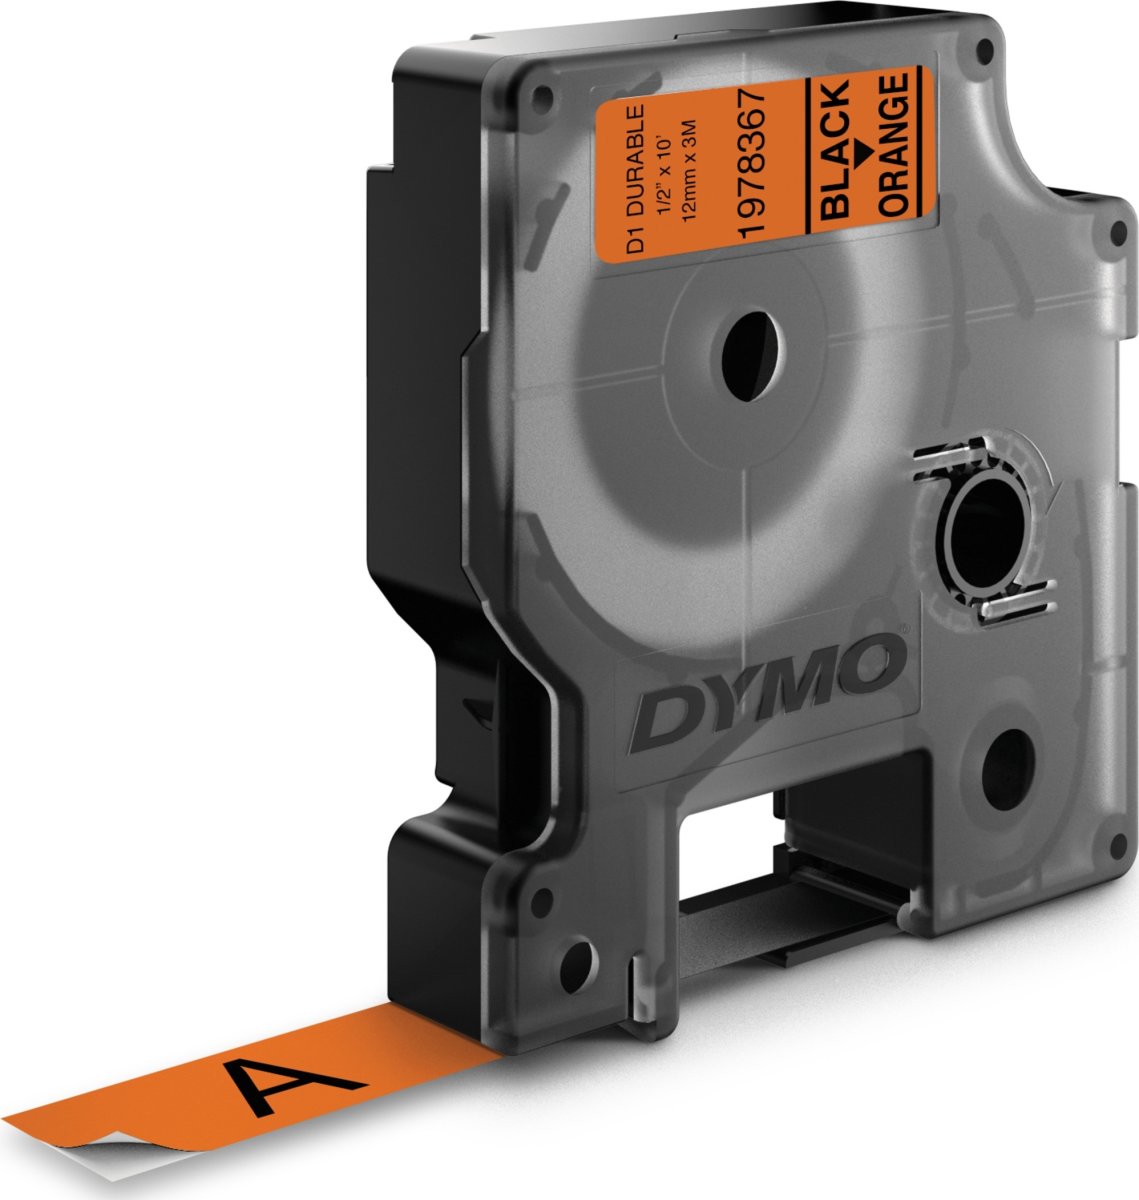 Dymo D1 Durable etikettape, 12 mm, svart på orange